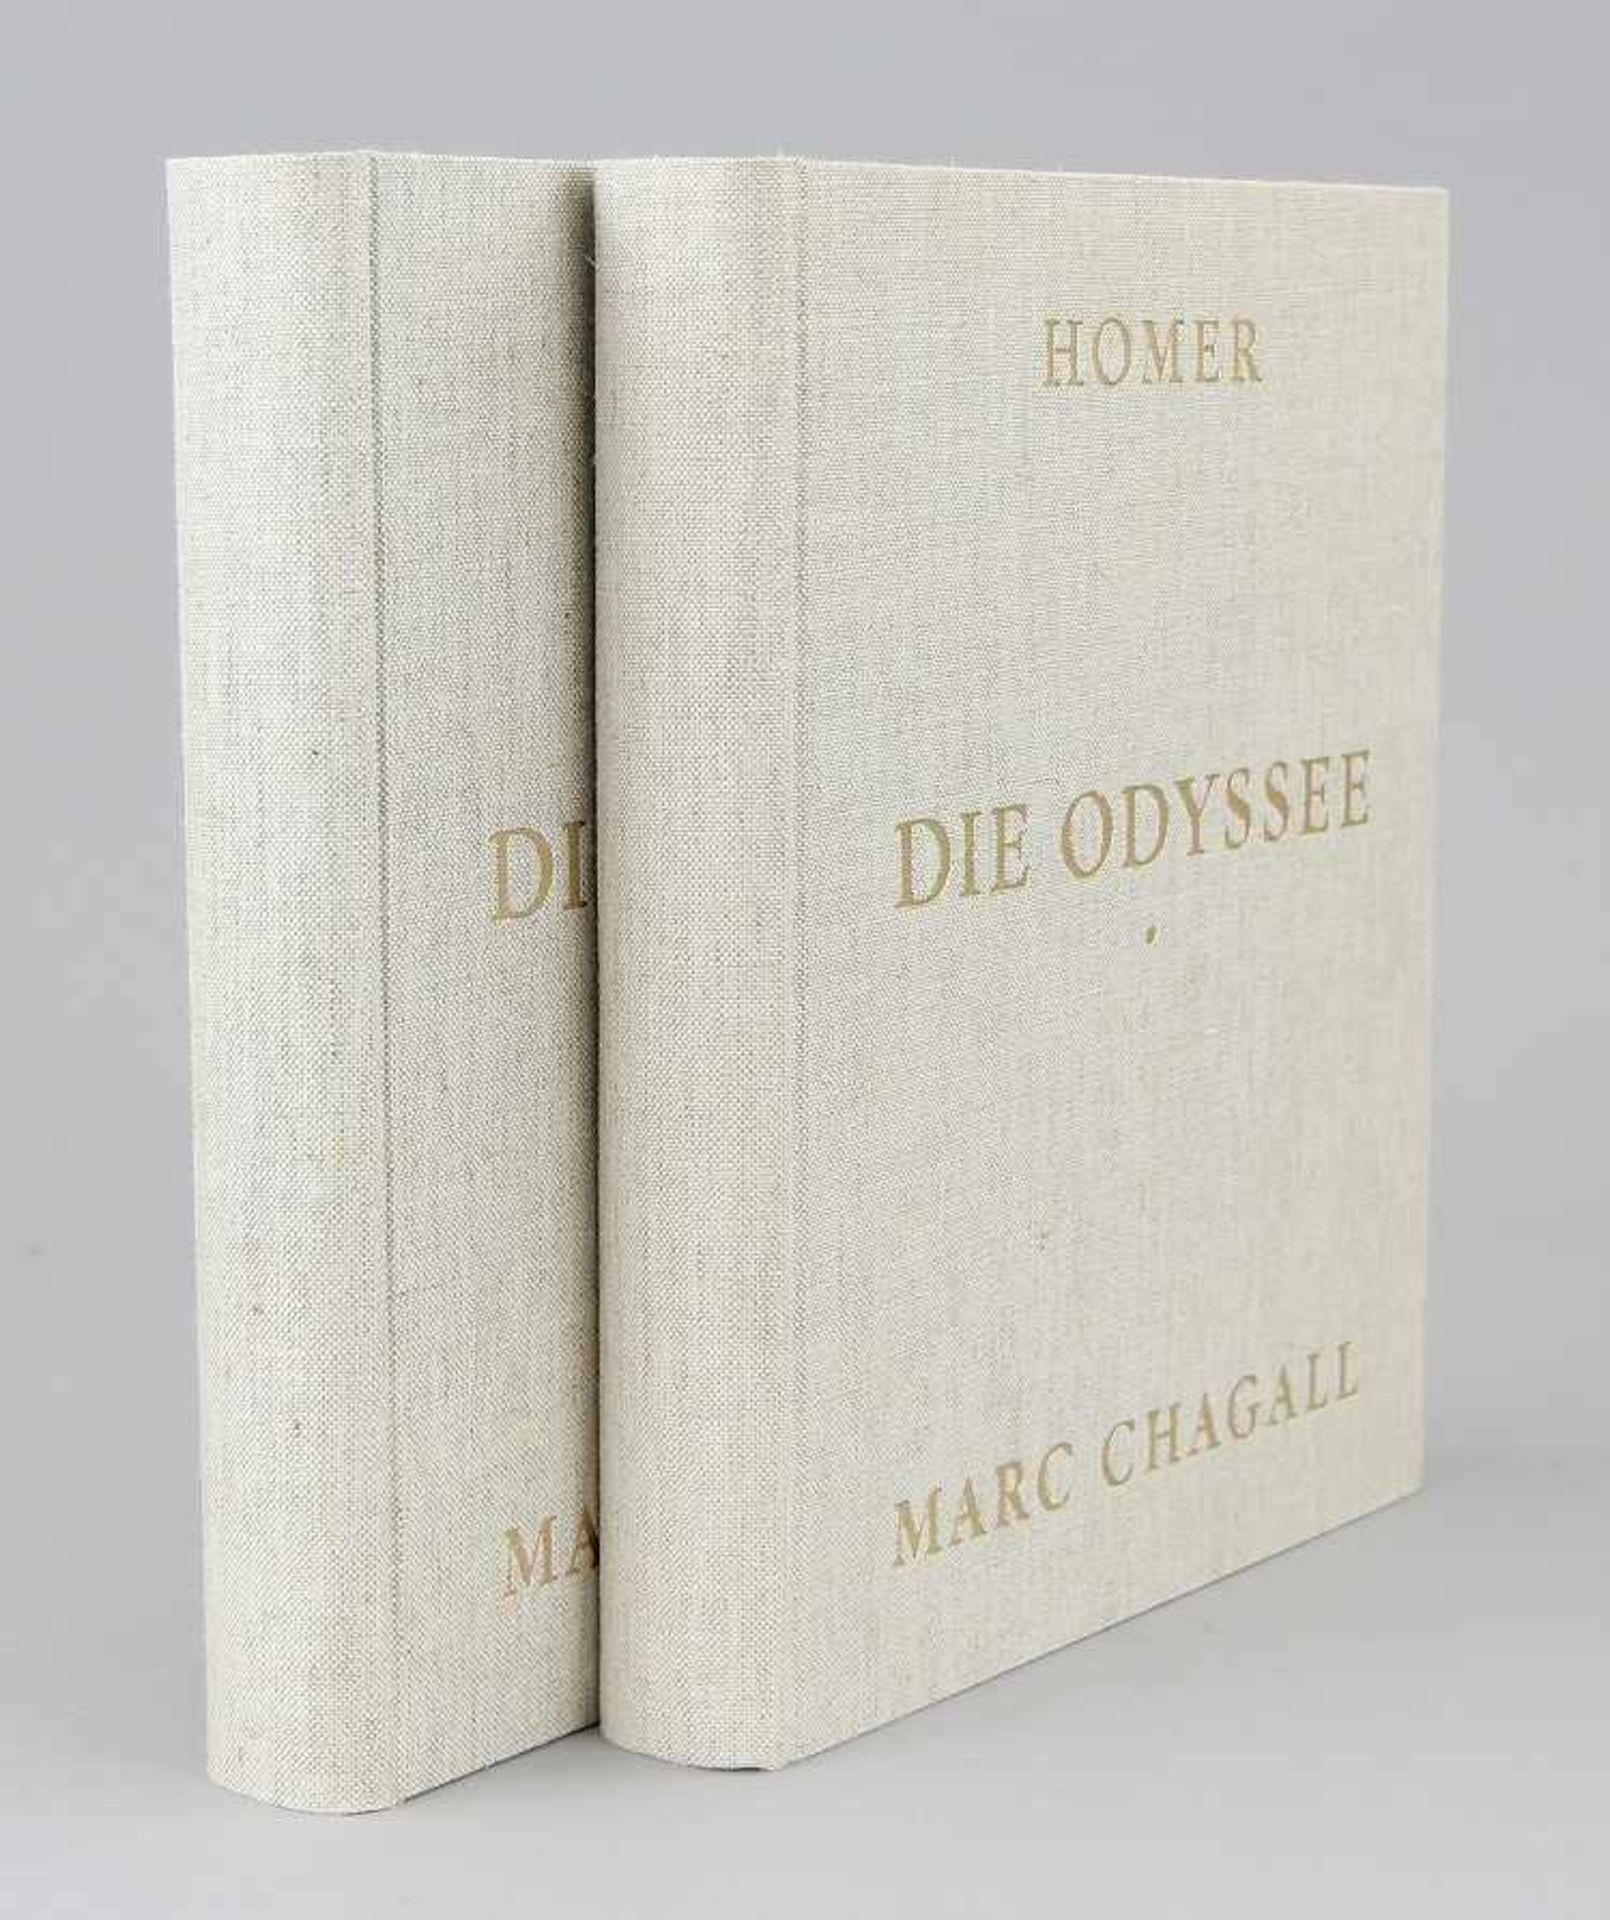 Chagall, Marc (Witebsk 1887 - 1985 Saint-Paul-de-Vence)"Homer", zwei Bände mit 604 Seiten sowie 43